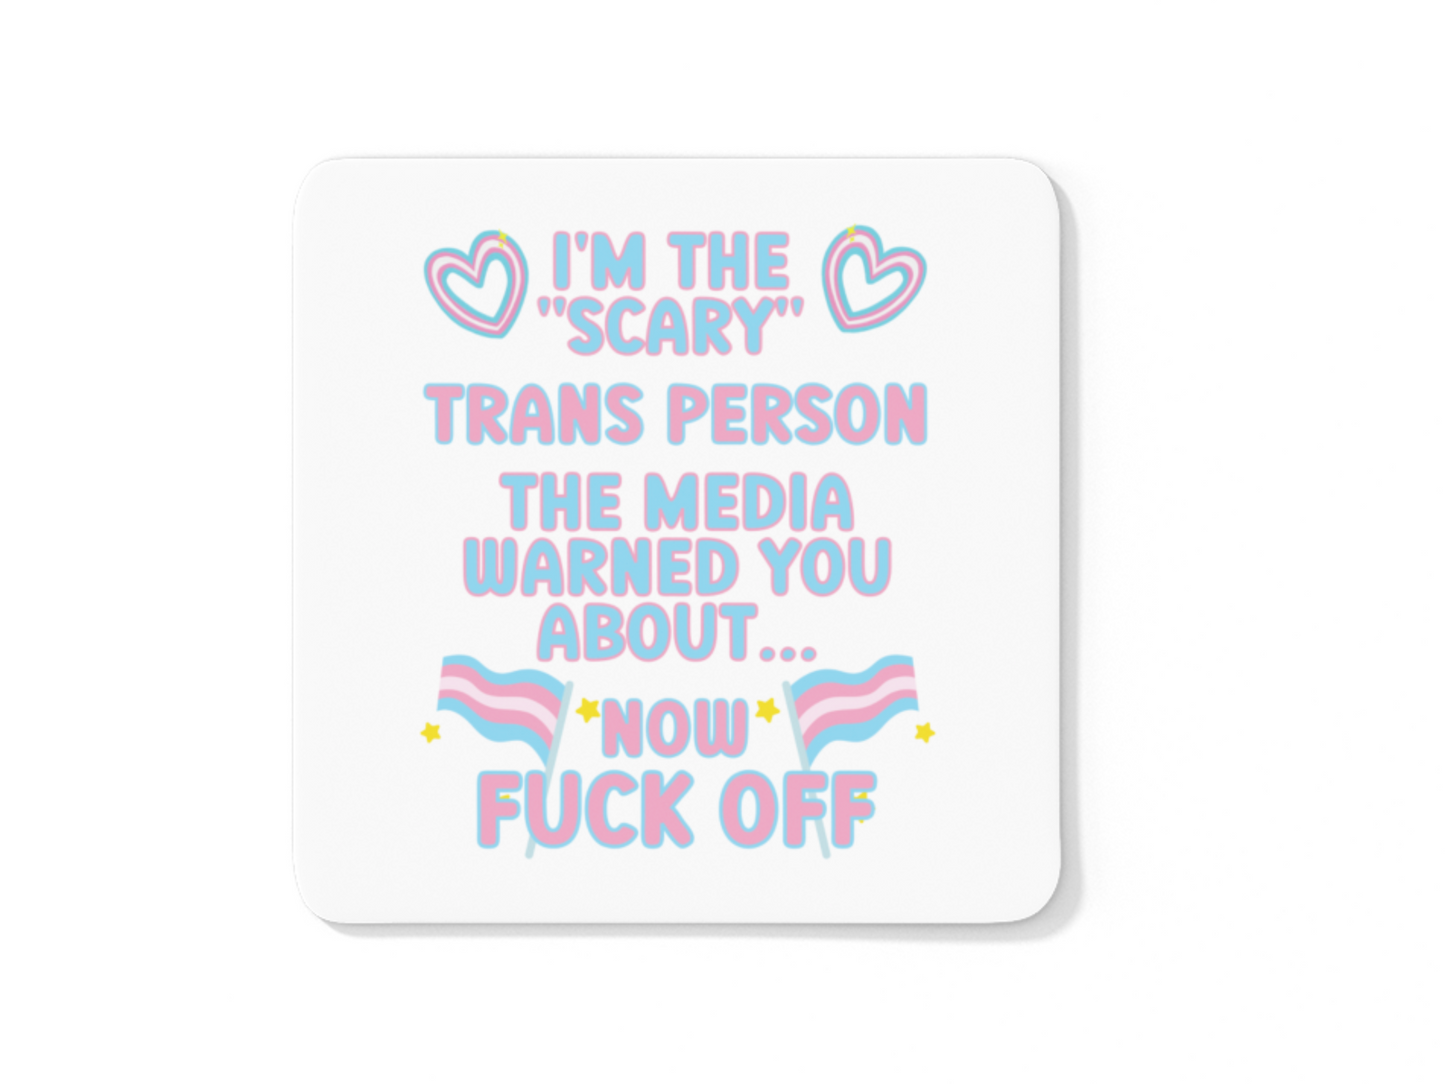 I'm the scary Trans person LGBTQIA coffee mug